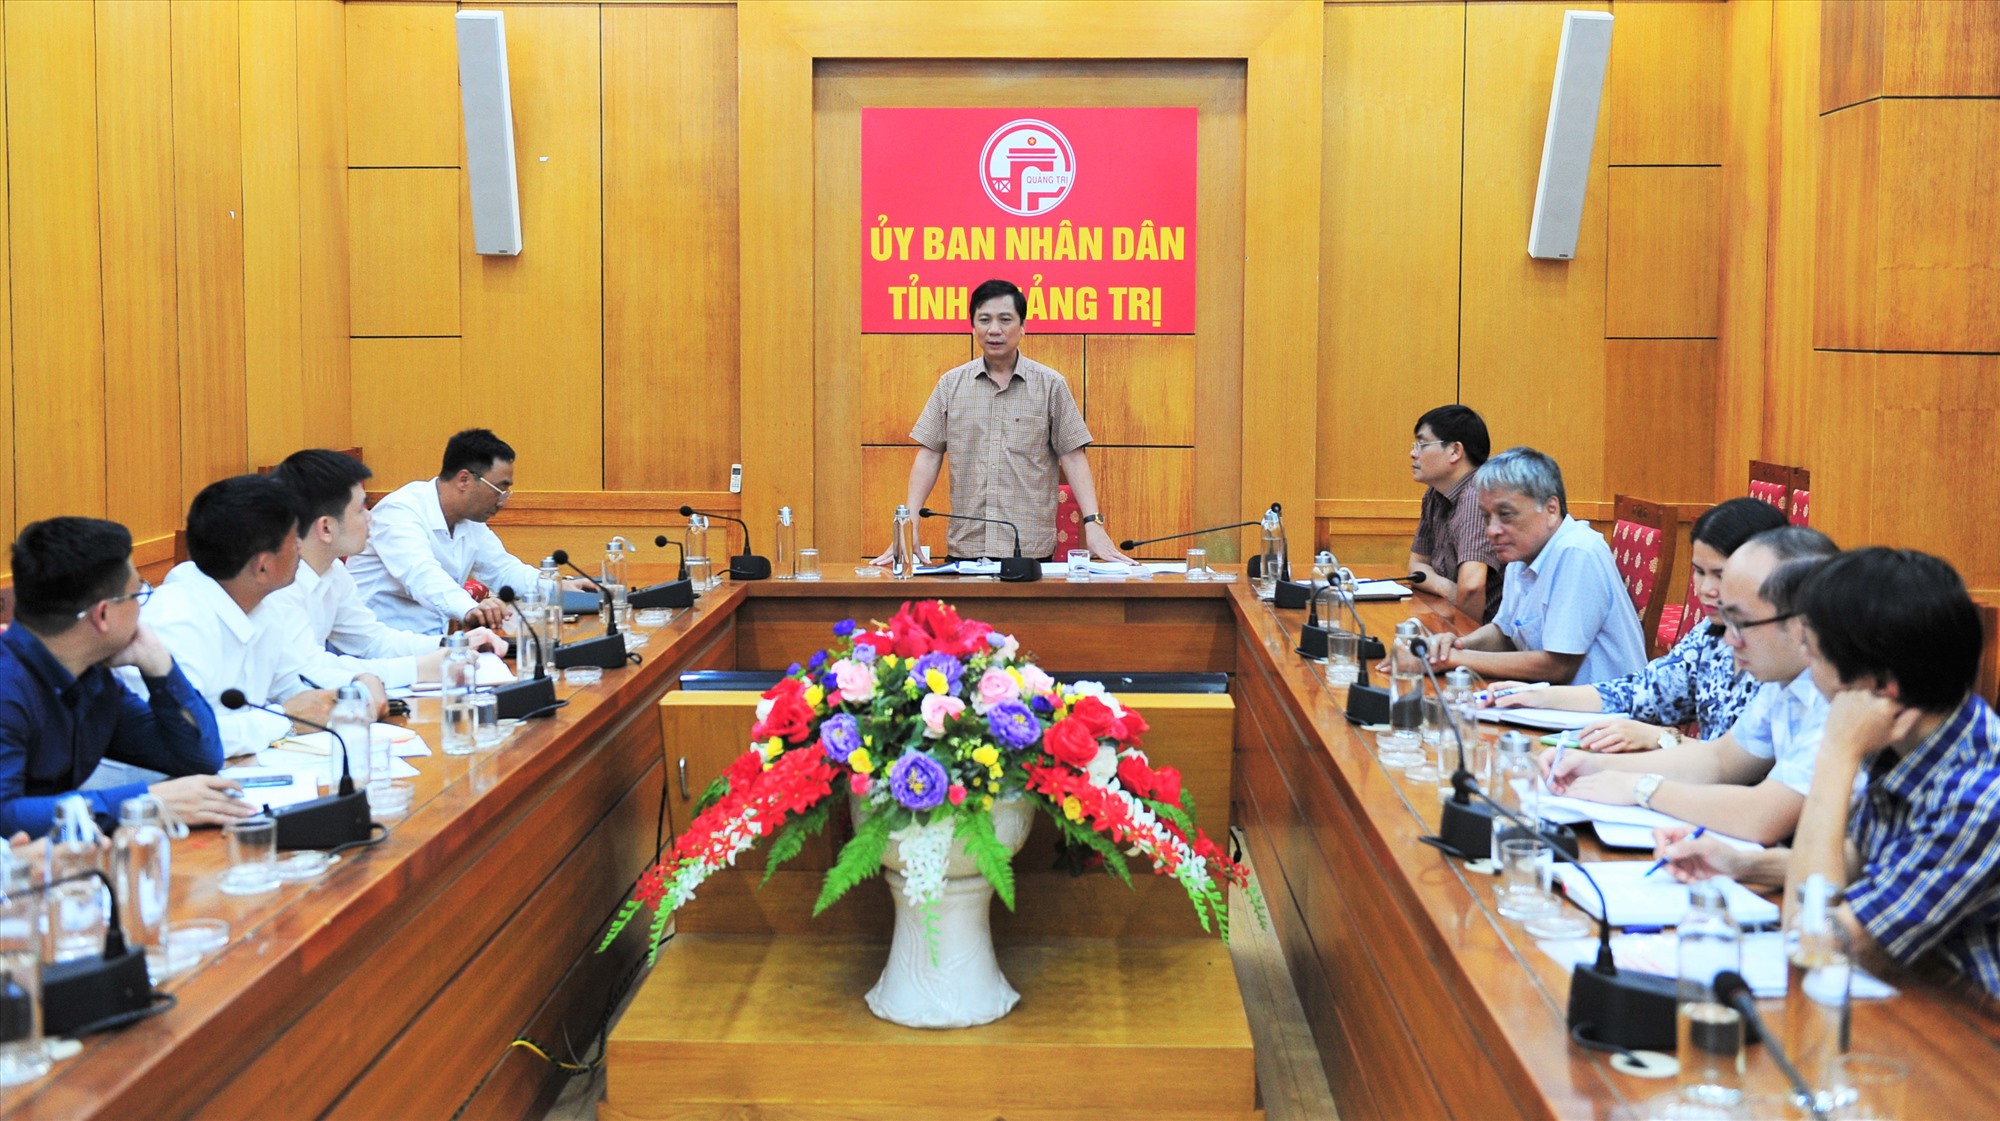 Phó Chủ tịch UBND tỉnh Hoàng Nam yêu cầu phía Công ty Cổ phần Tập đoàn T&T thành lập đề án cụ thể để tỉnh có cơ chế giải quyết - Ảnh: Trần Tuyền